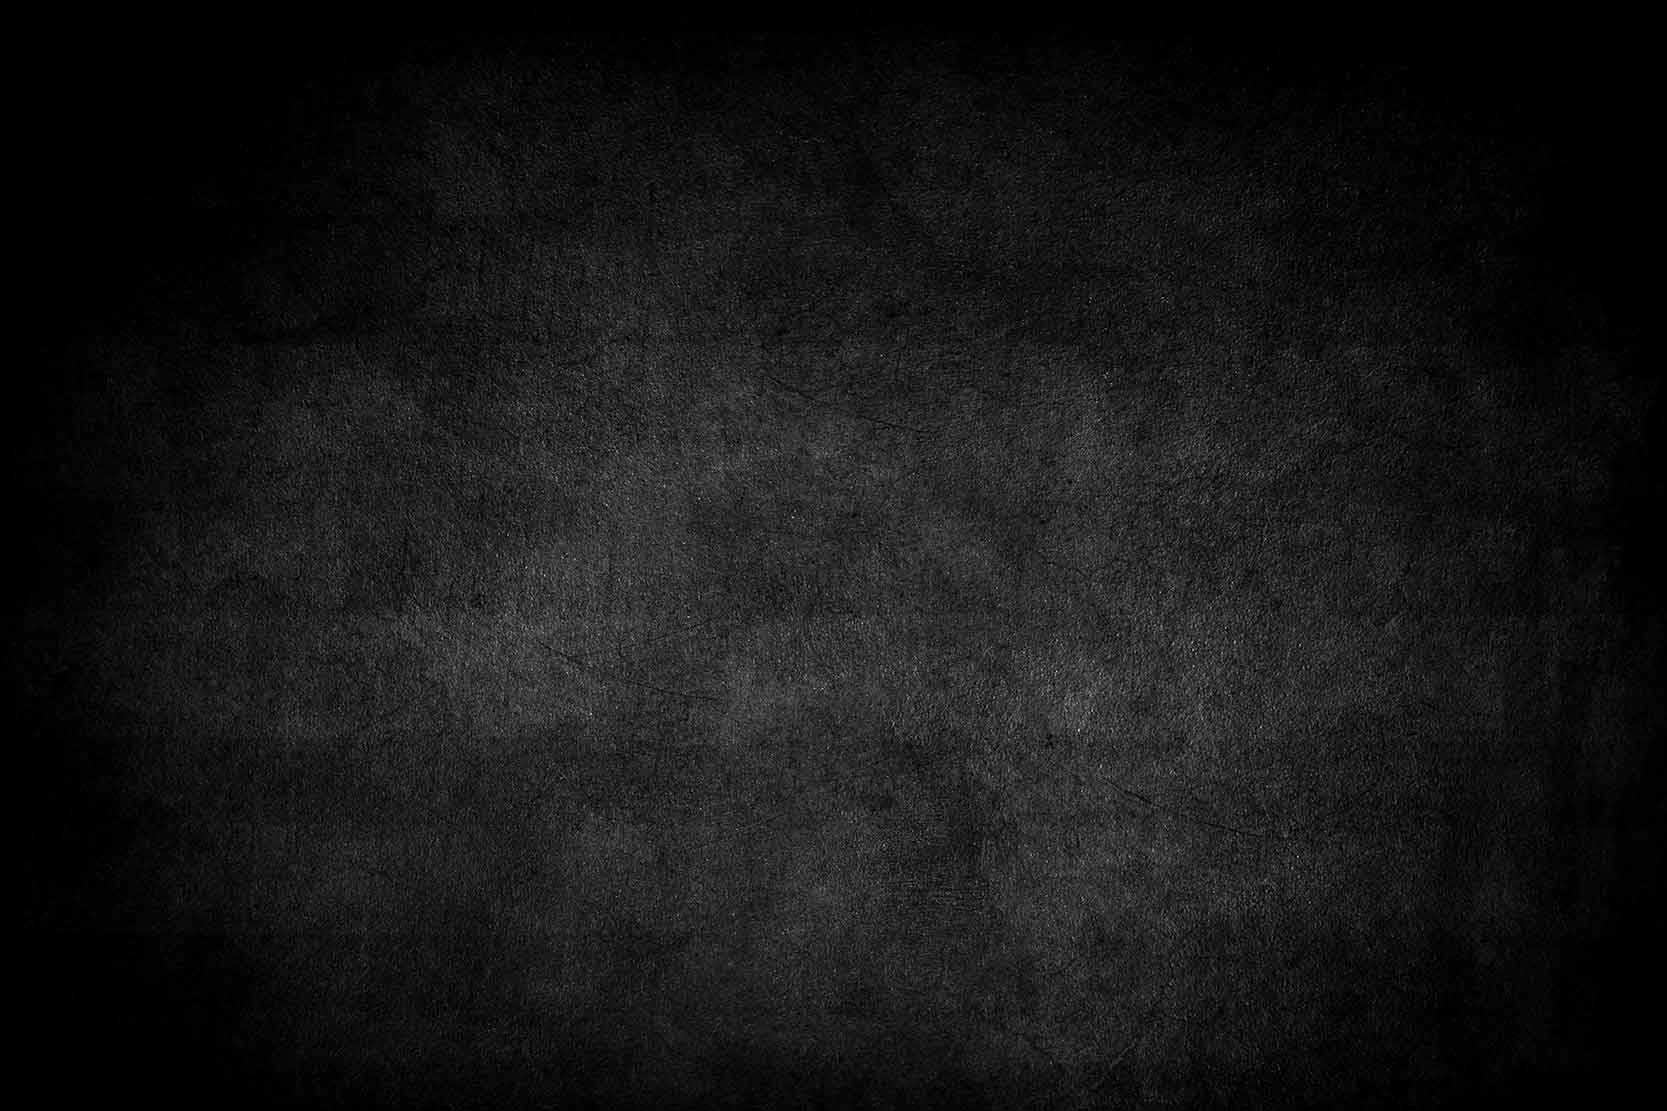 An image of a blank chalkboard.